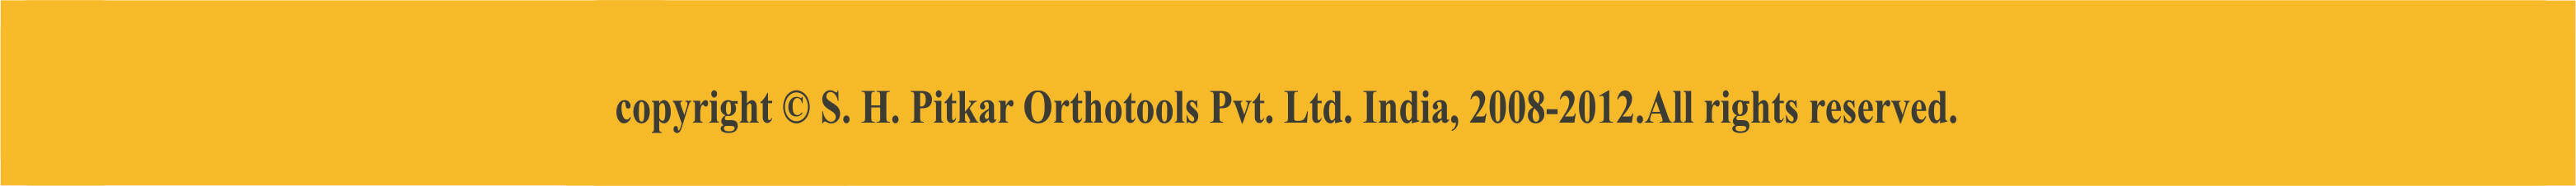 S.H.Pitkar Orthotools Pvt.Ltd. India